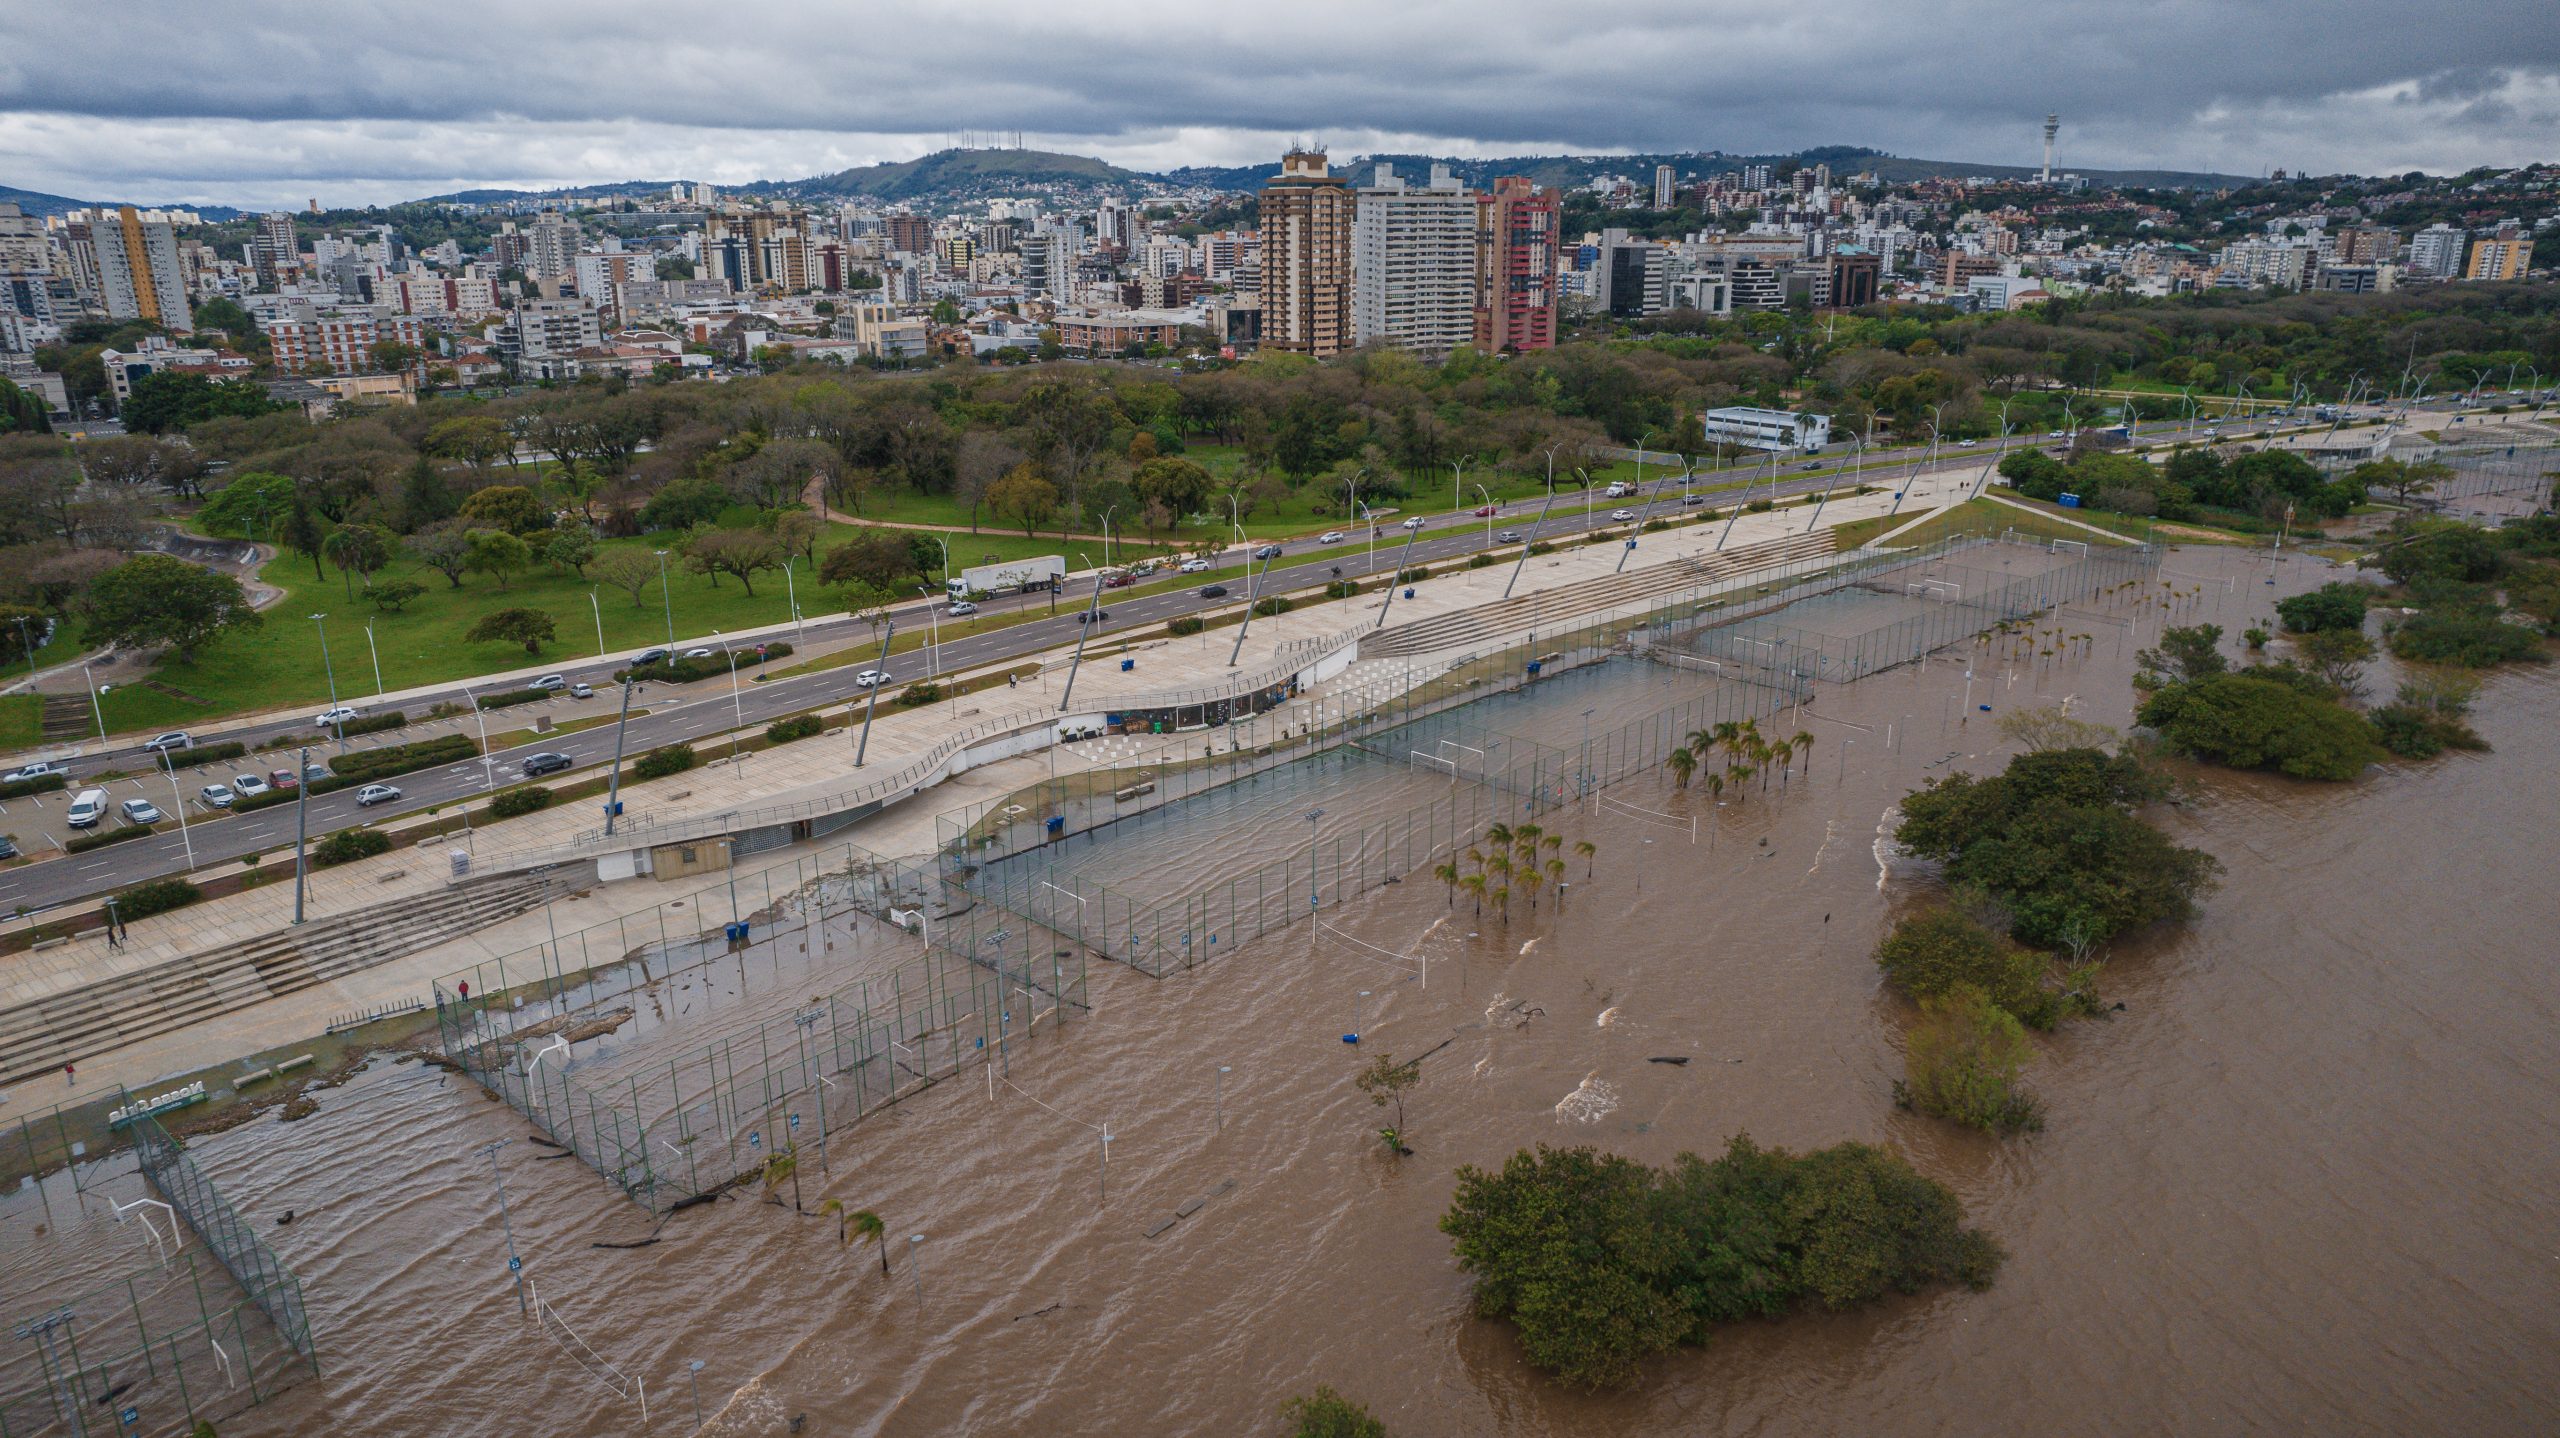 Imagens Aéreas Mostram Cheia Rio Guaíba Em Porto Alegre Fotos 